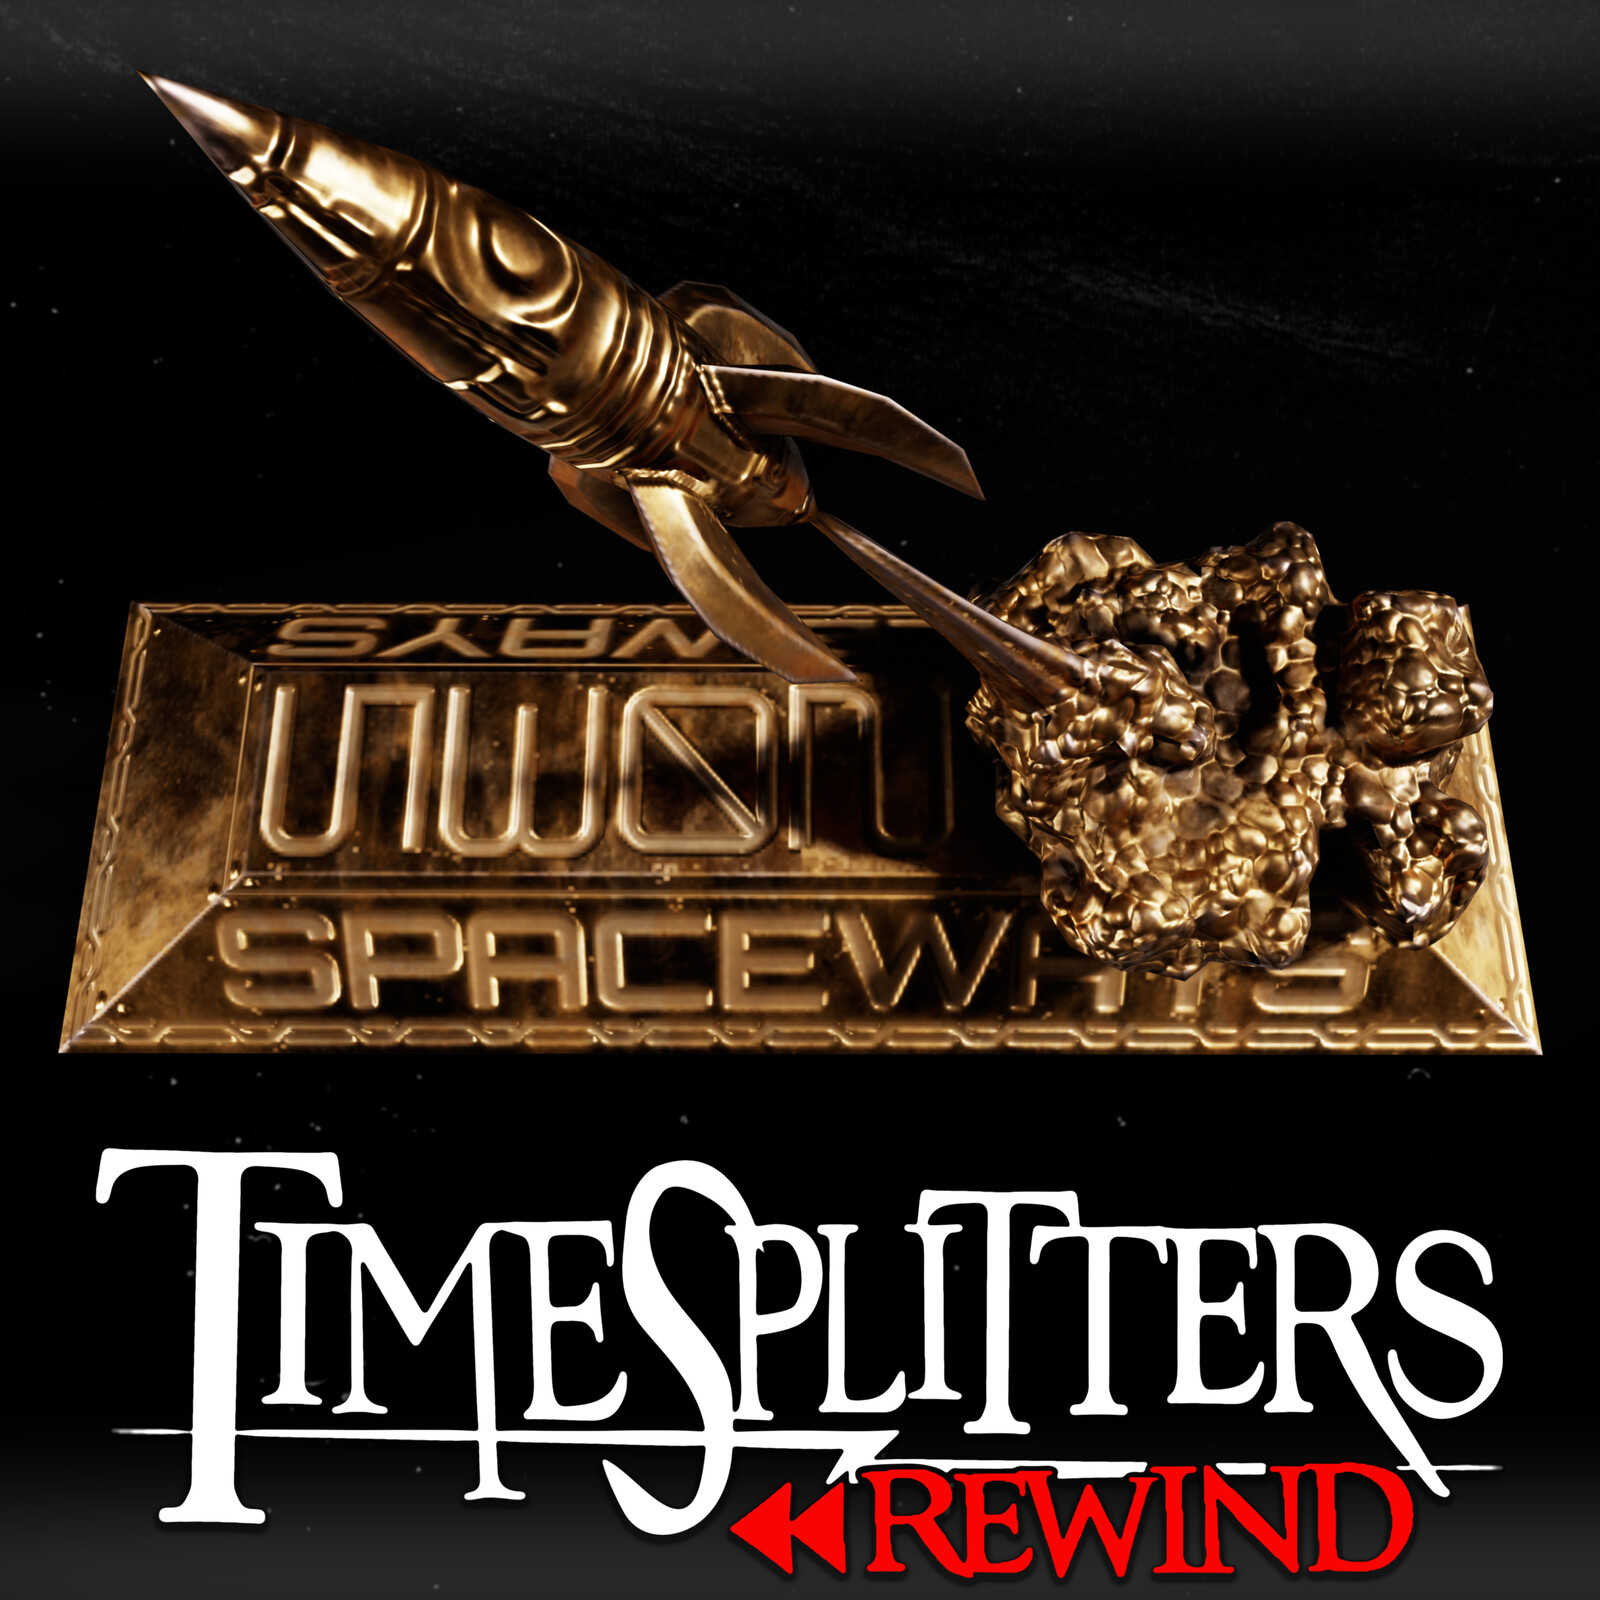 Spaceship Statue - TimeSplitters Rewind